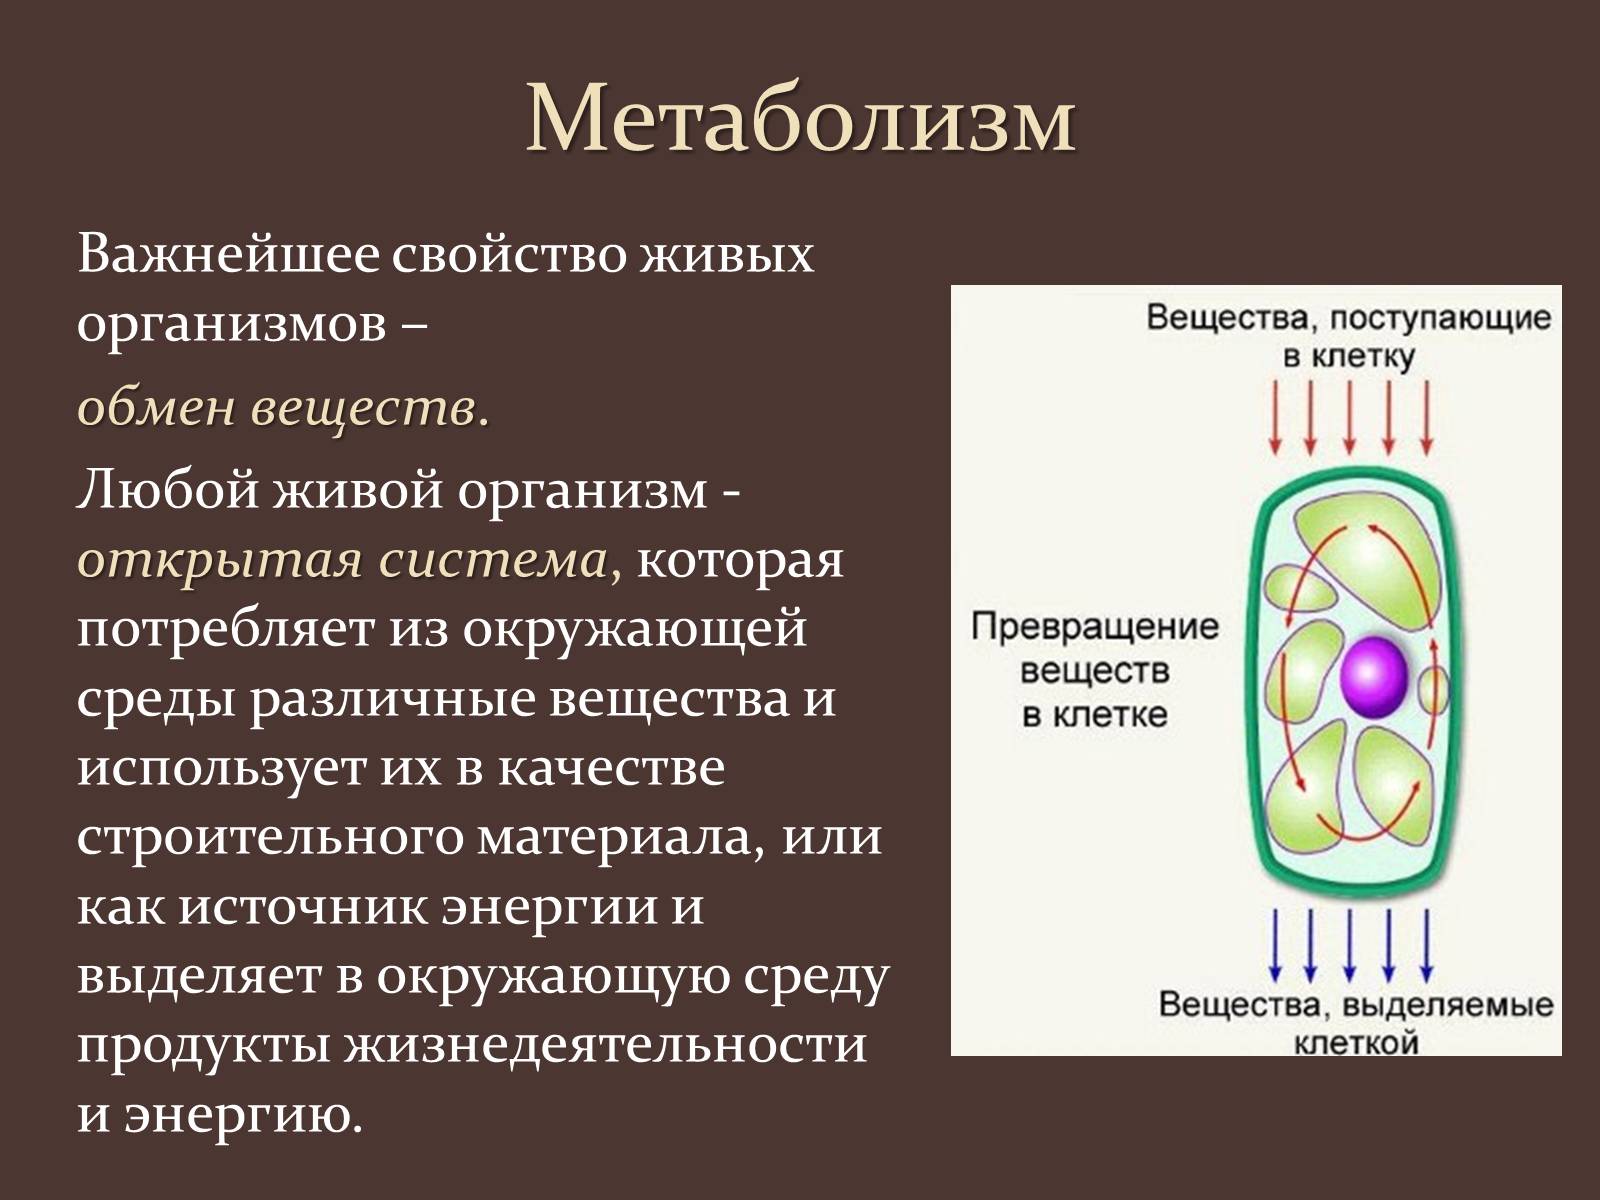 Растительная клетка обмен веществ. Обмен веществ живых организмов. Метаболизм клетки. Метаболизм живых организмов.